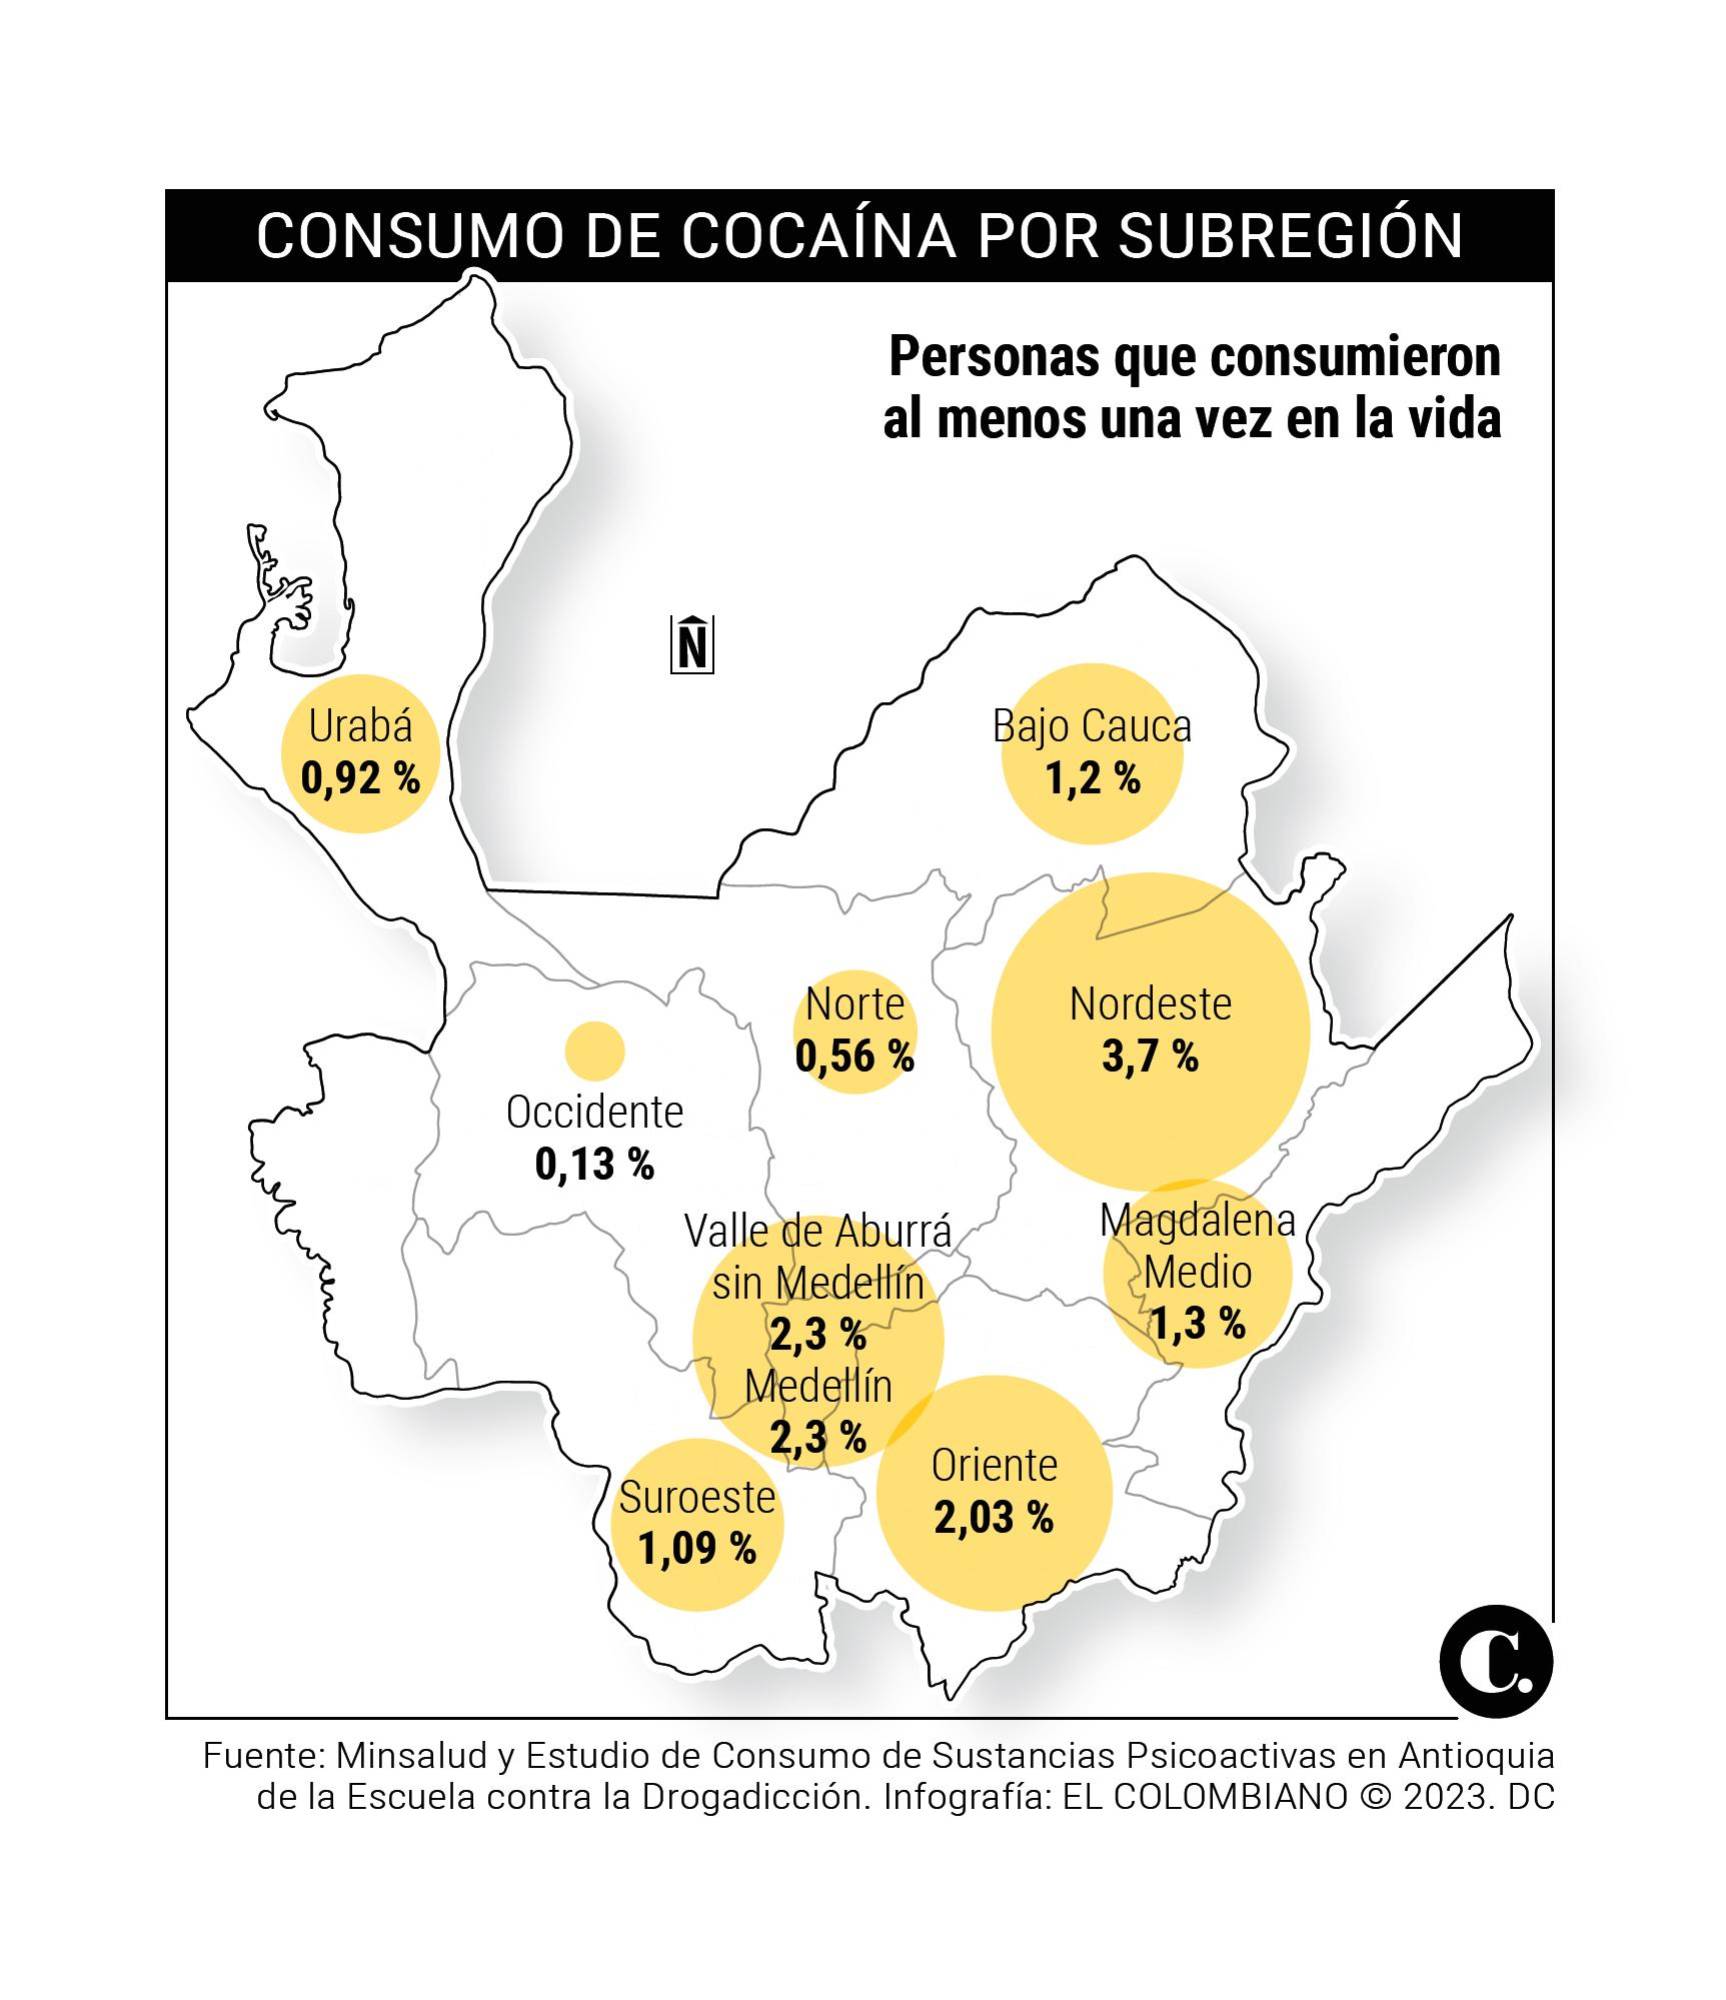 Mortalidad por cocaína en Medellín es tres veces mayor que la tasa mundial 